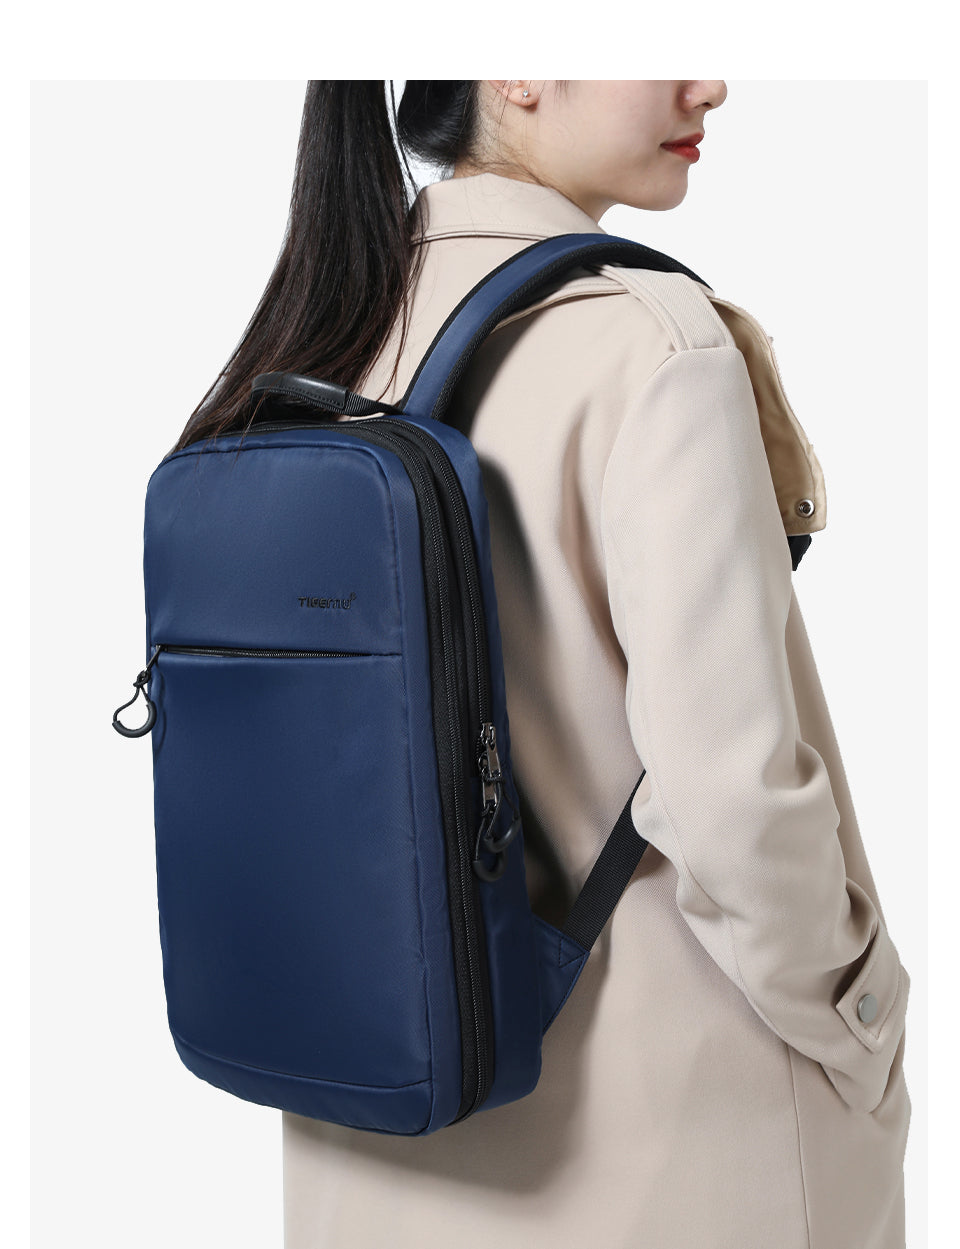 Tigernu TB-S slim backpack for women black